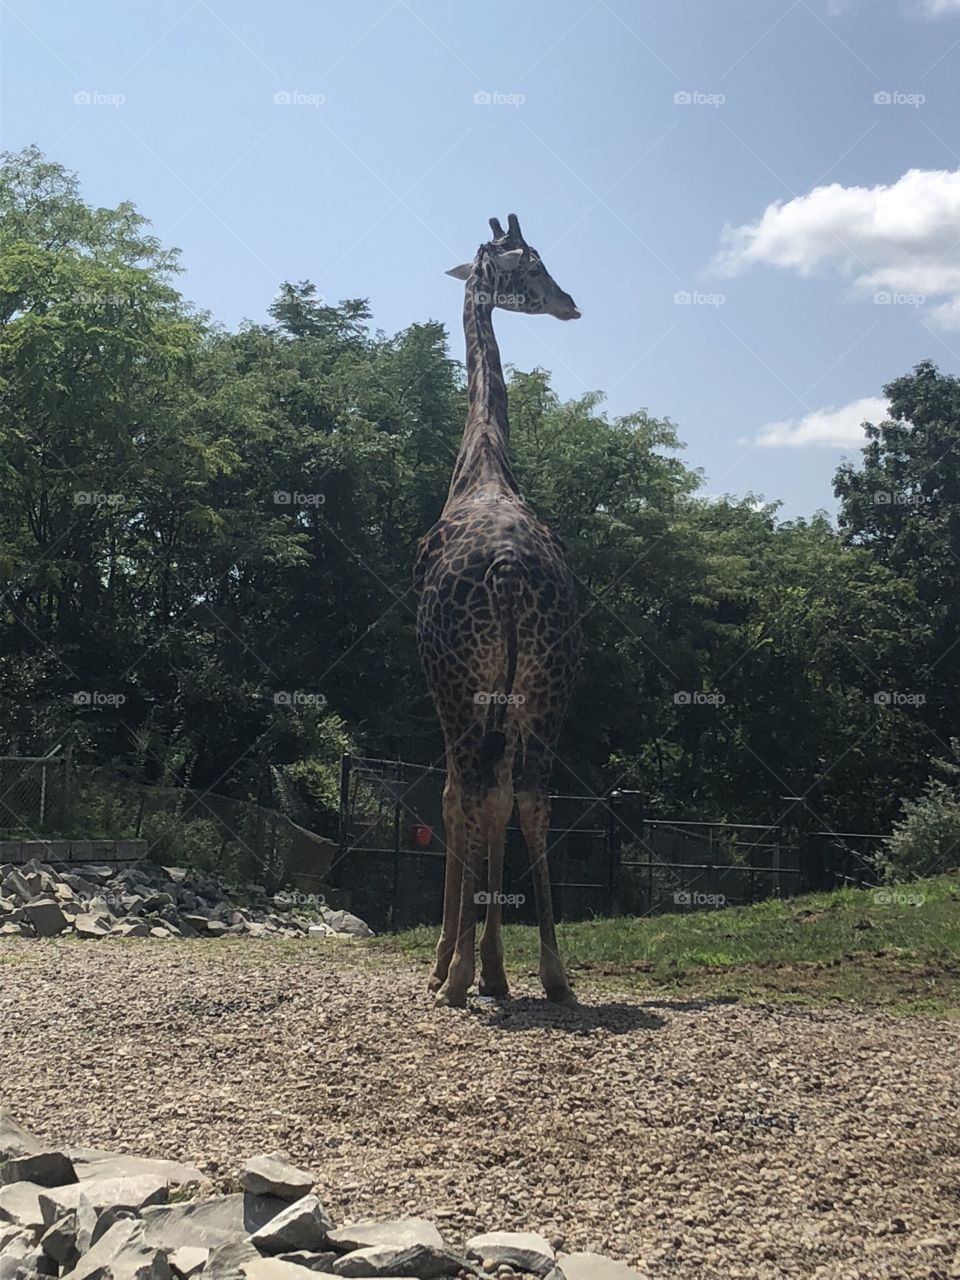 PA Zoo Giraffe